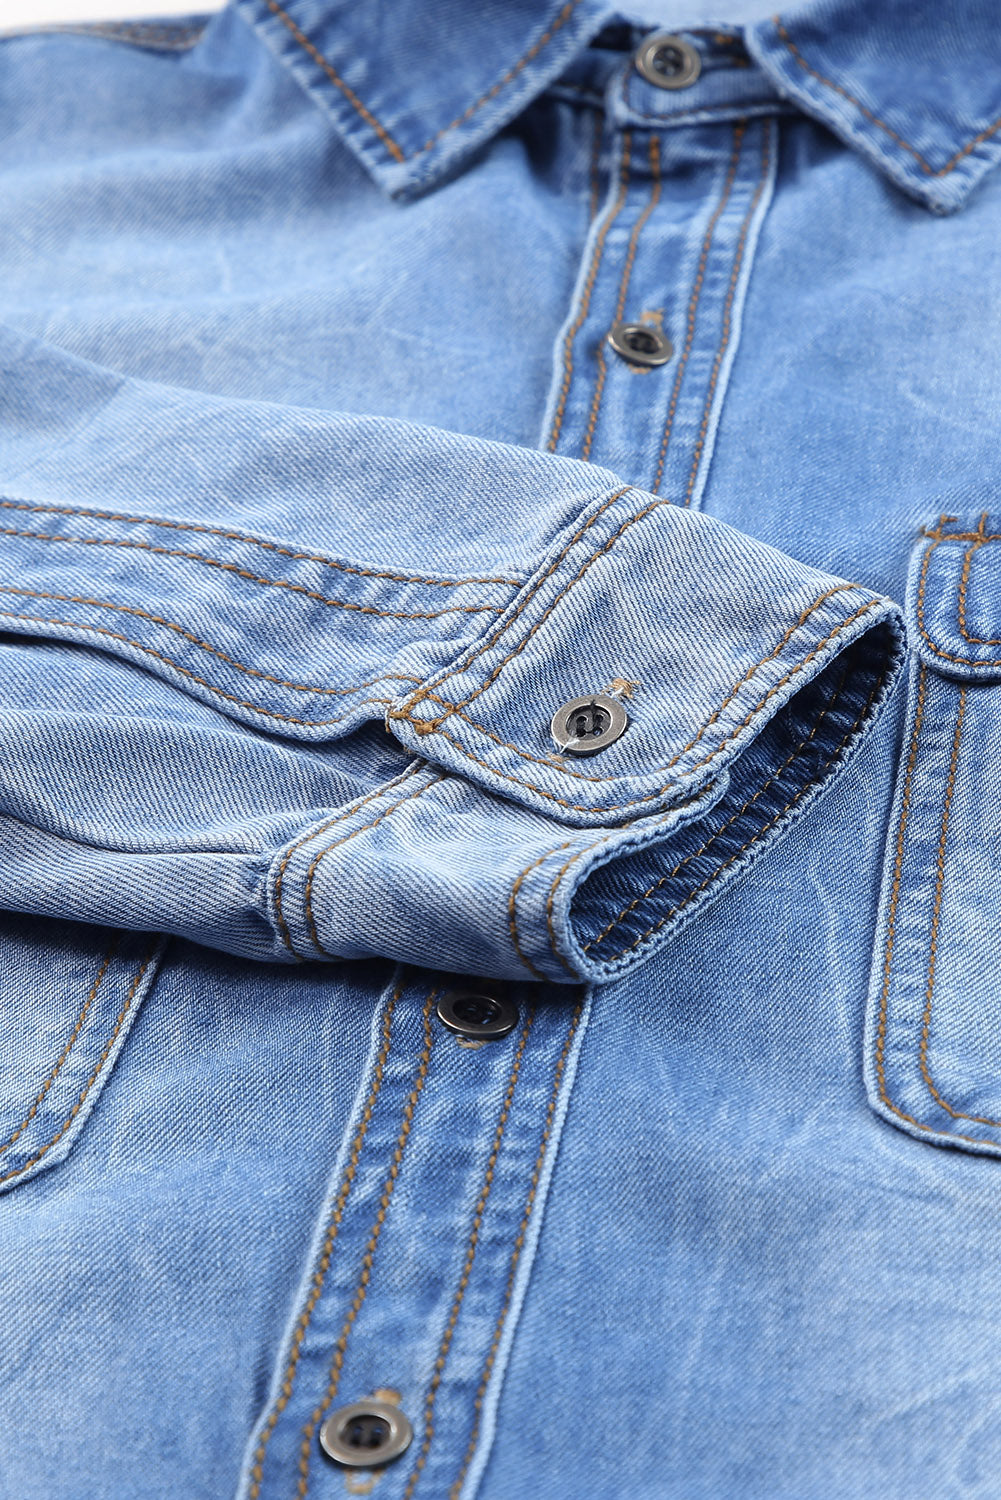 Veste en jean bleu ciel avec poches à rabat et ourlet brut